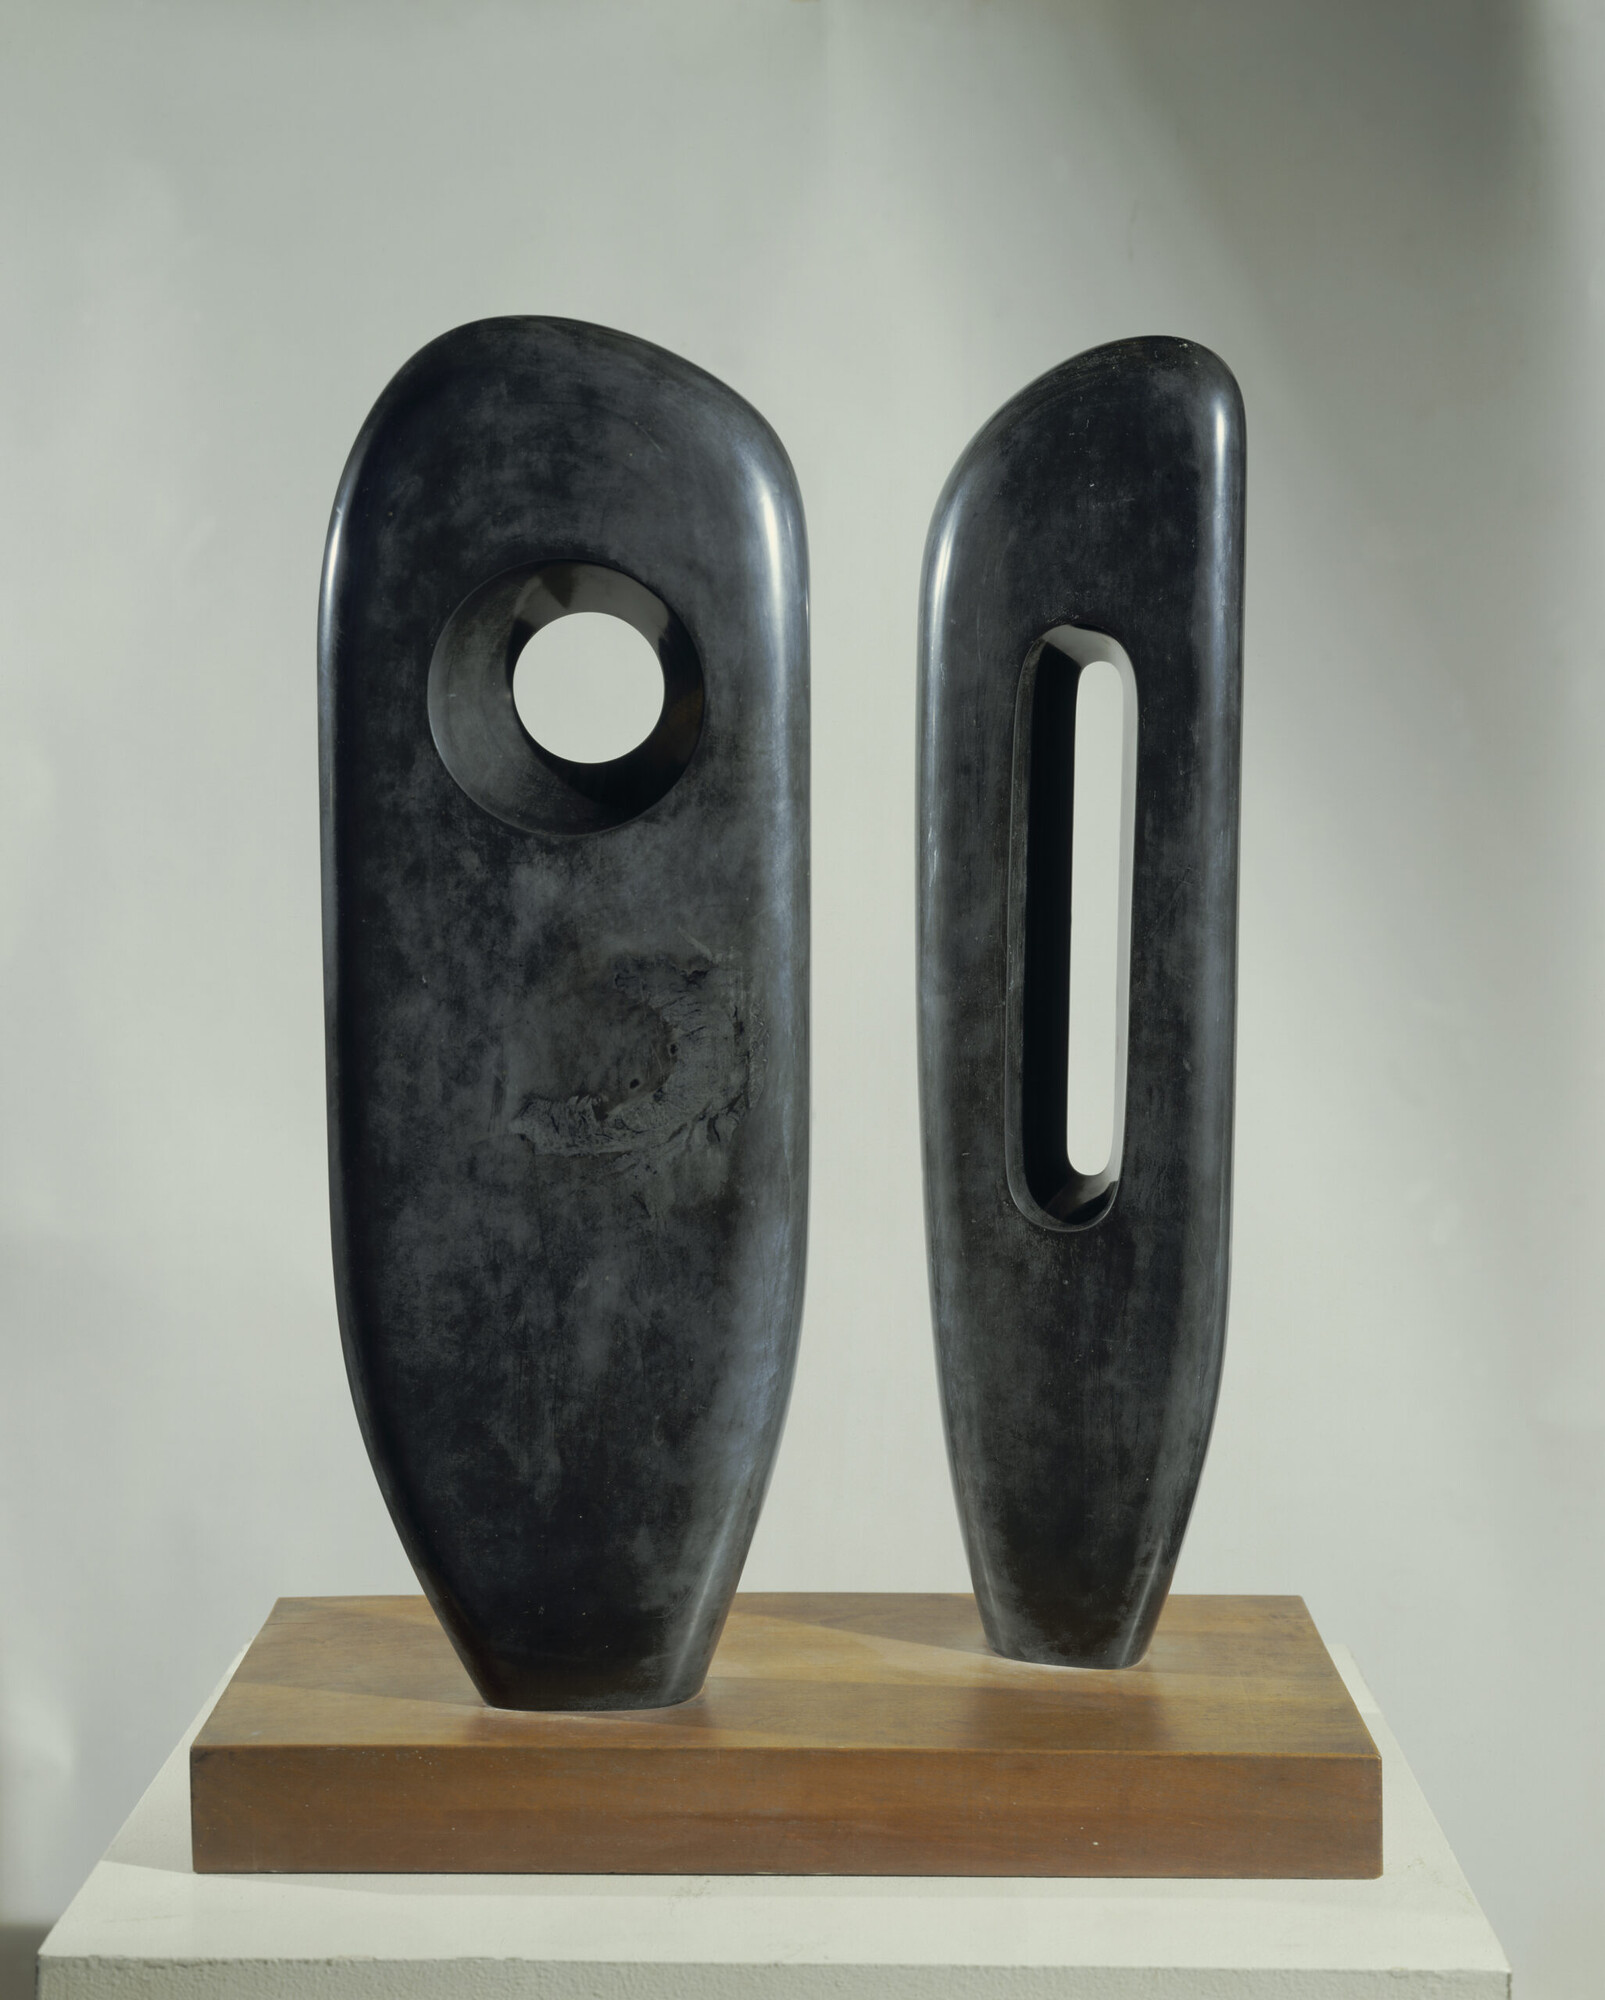 Barbara Hepworth, <em>Two Figures (Menhirs)</em>, 1964, Slate on wooden base, Image courtesy of Tate Modern.